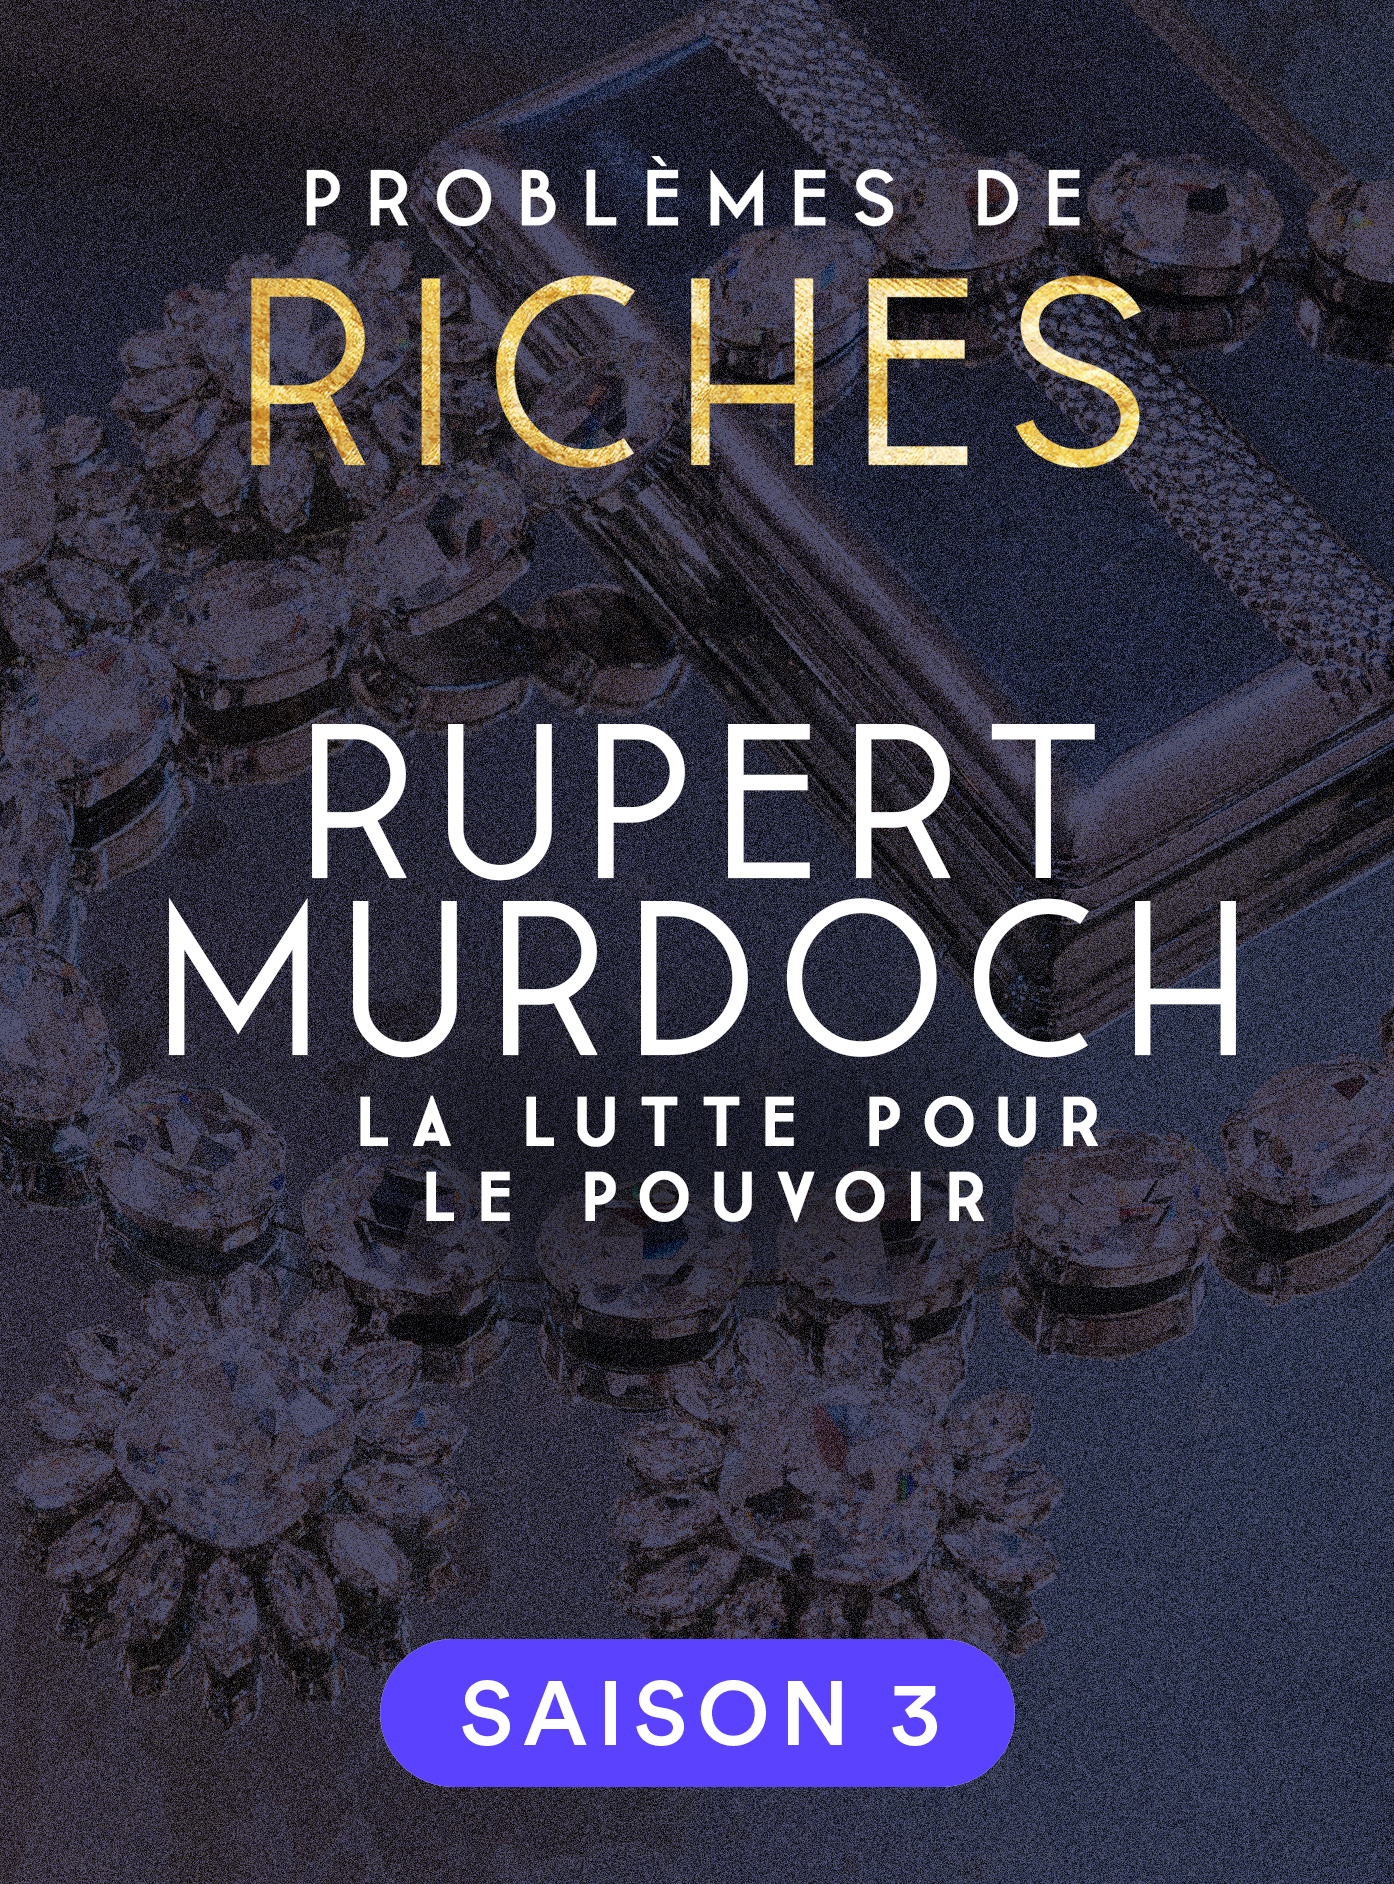 Rupert Murdoch, lutte pour le pouvoir